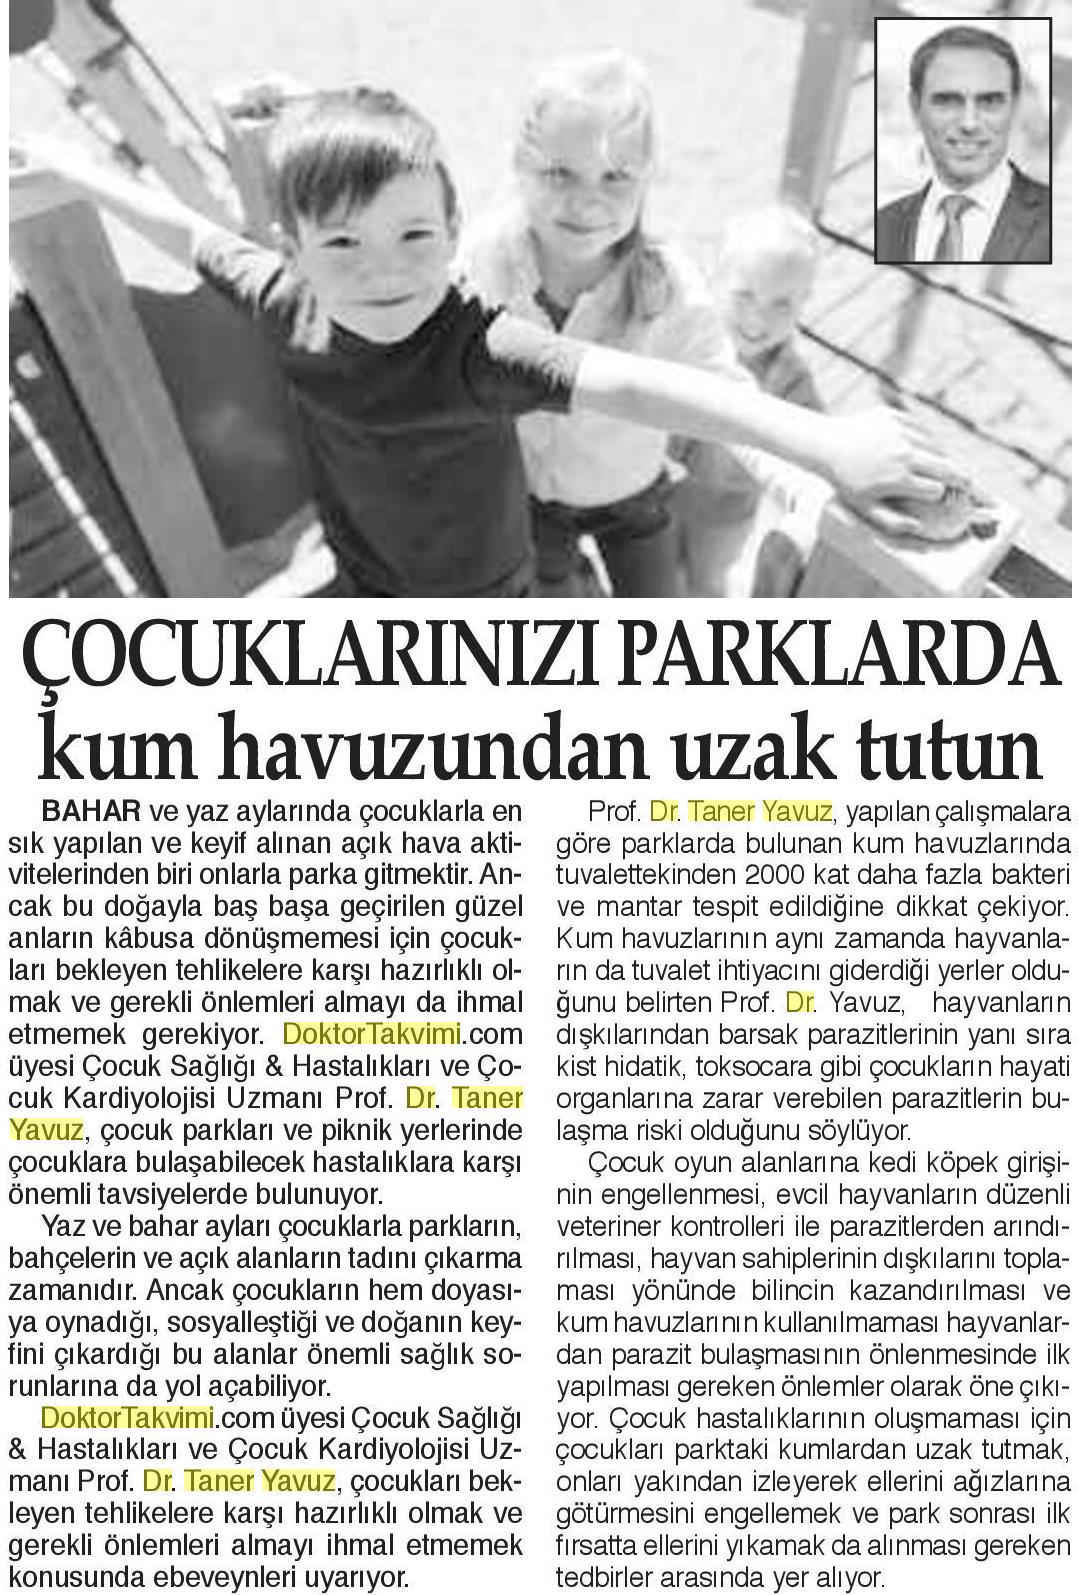 05.03.2019	Bizim Anadolu Gazetesi	PARKLARDA KUM HAVUZUNDAN UZAK TUTUN 